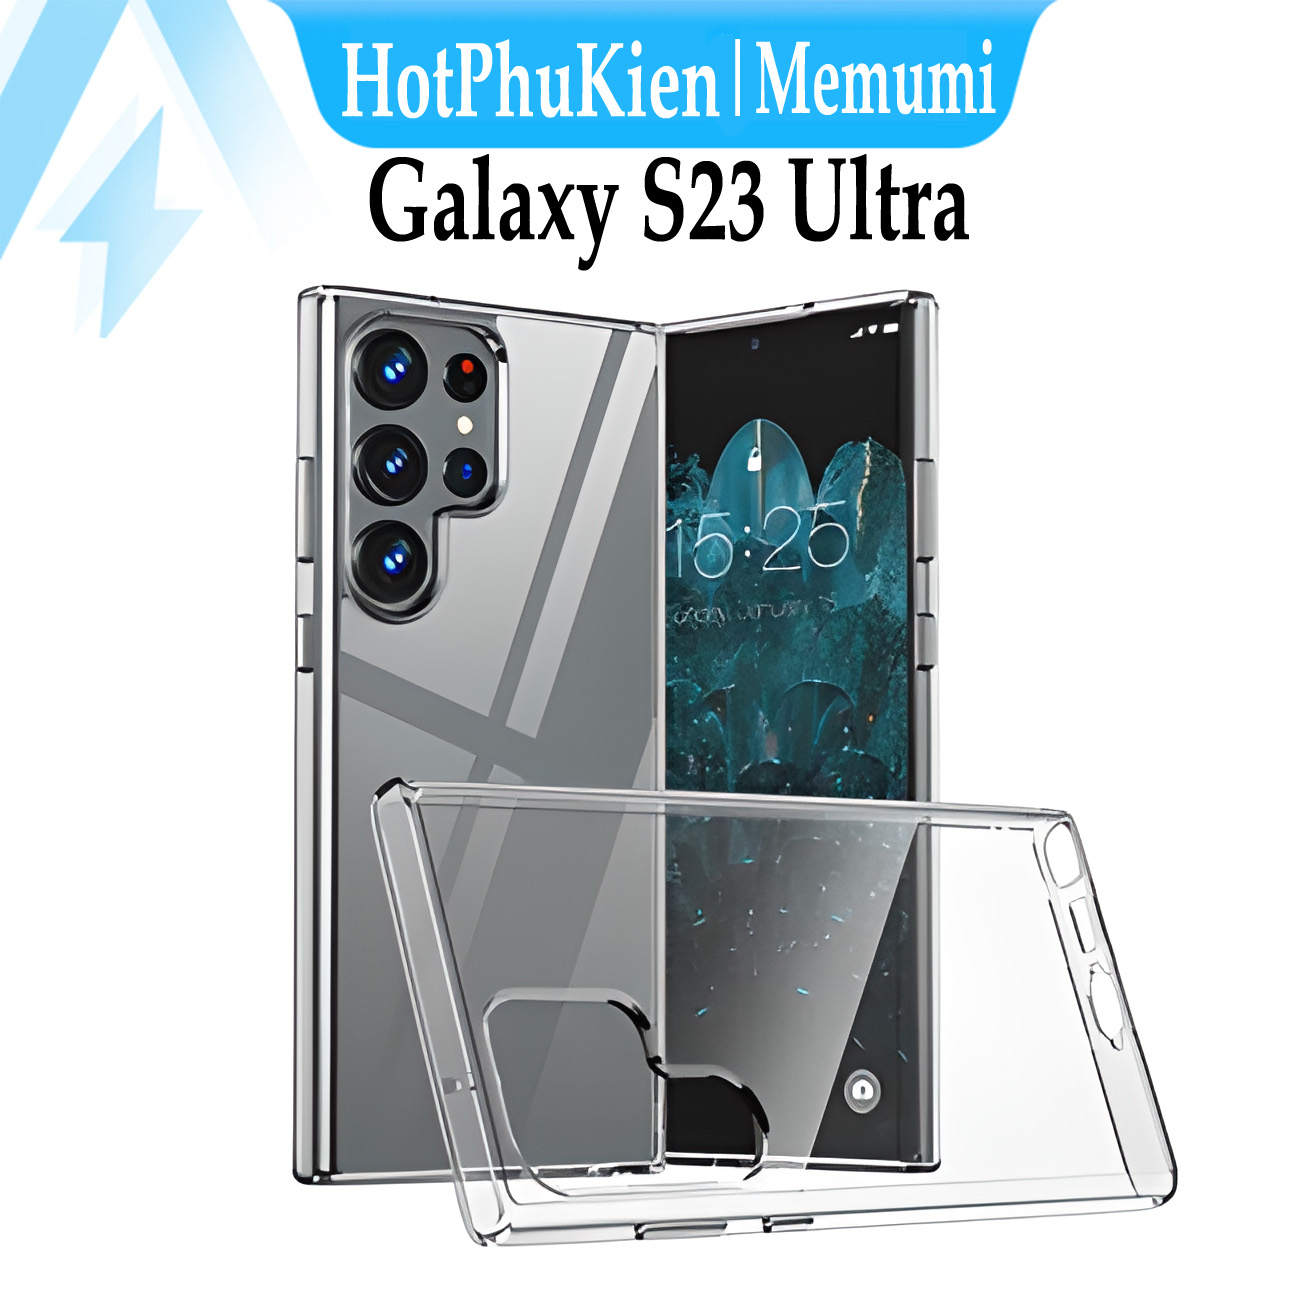 Ốp lưng siêu mỏng 0.65mm cho Samsung Galaxy S23 Ultra hiệu Memumi Clear Case (thiết kế với độ trong tuyệt đối, không bị ố vàng theo thời gian, hỗ trợ tản nhiệt siêu tốt) - Hàng nhập khẩu